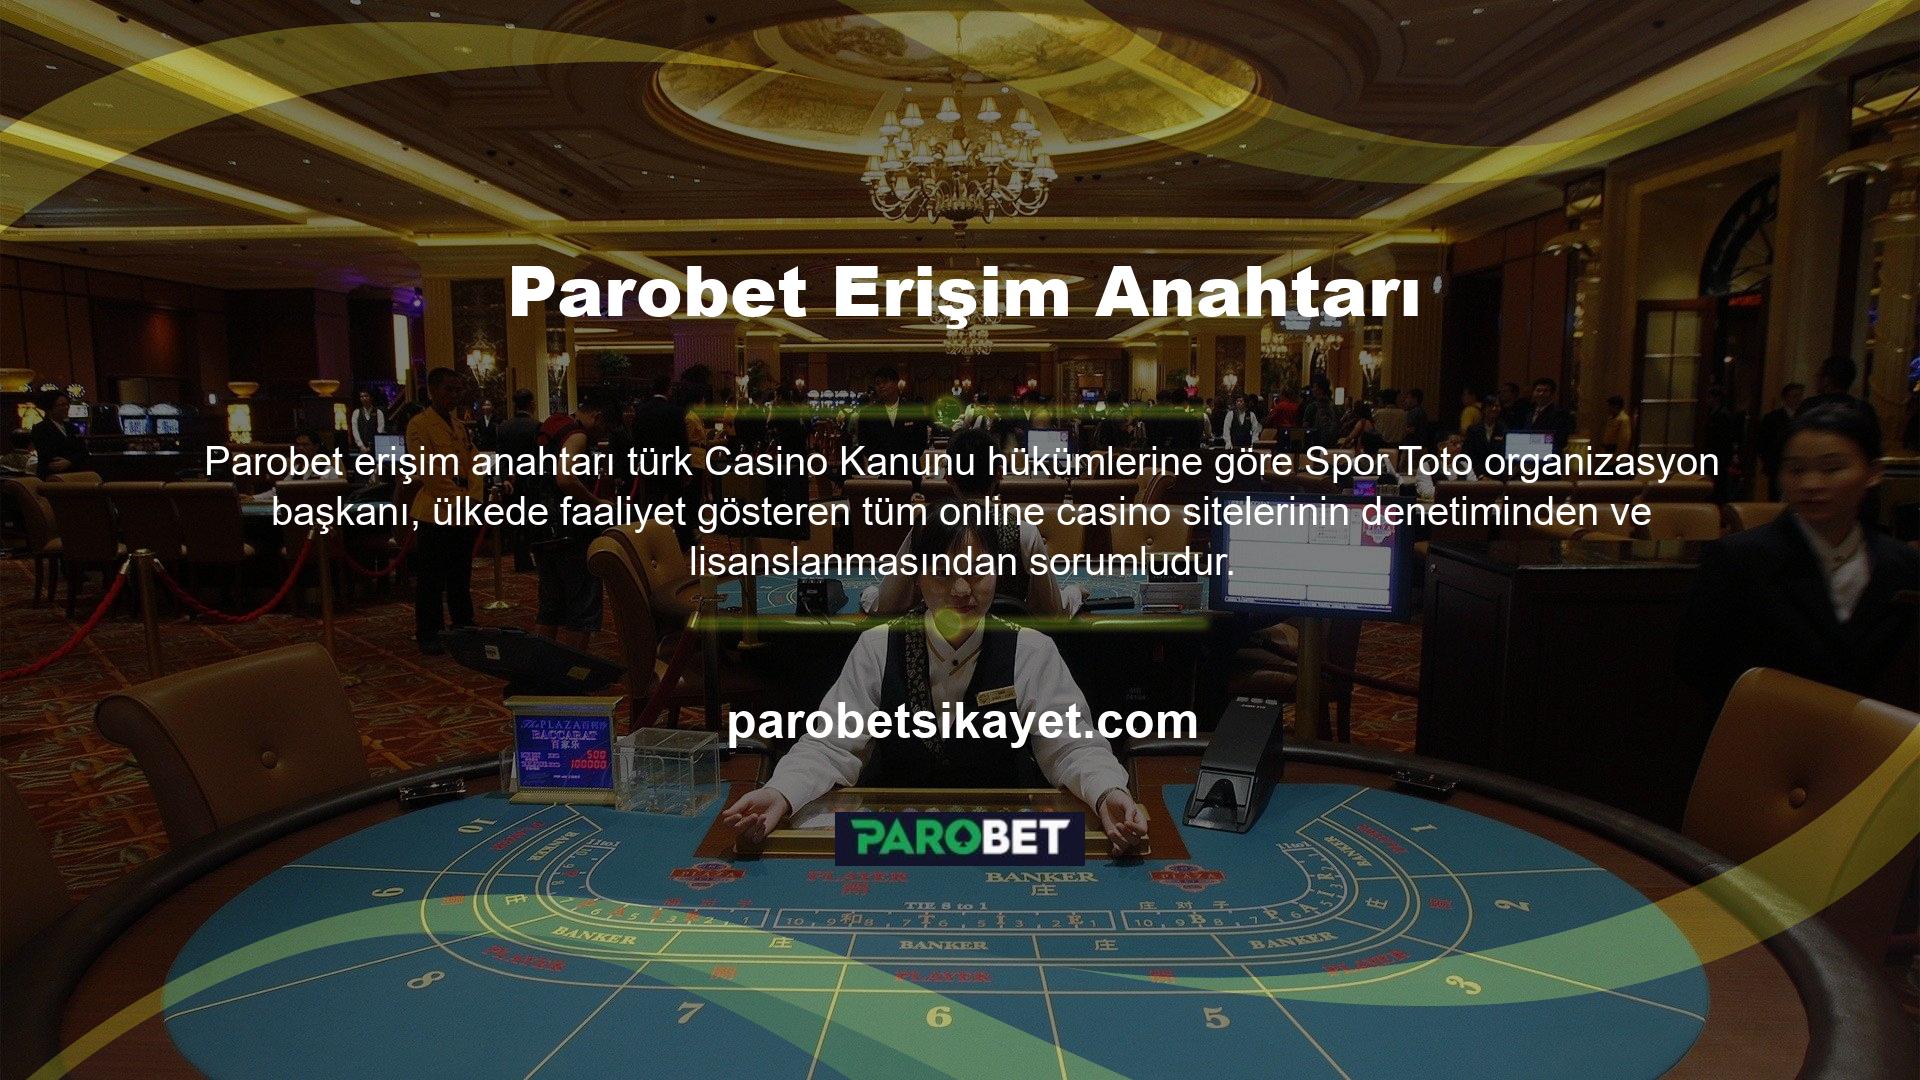 Parobet Casino web sitesi uluslararası bir web sitesidir ve yurt içinde ofisi bulunmadığından denetlenmemektedir